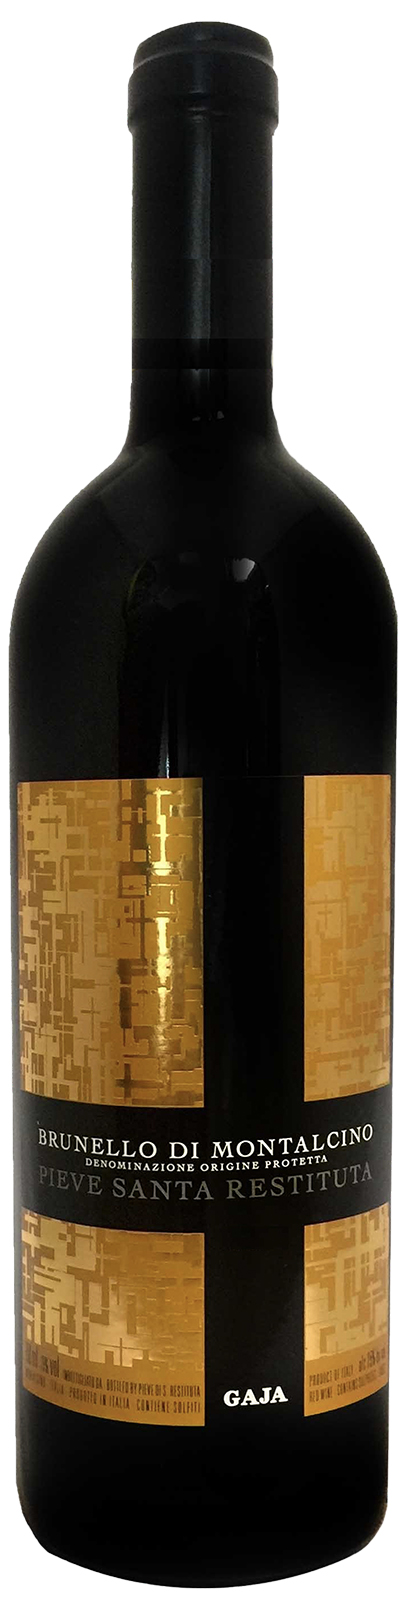 Bottle shot of 2013 Brunello di Montalcino